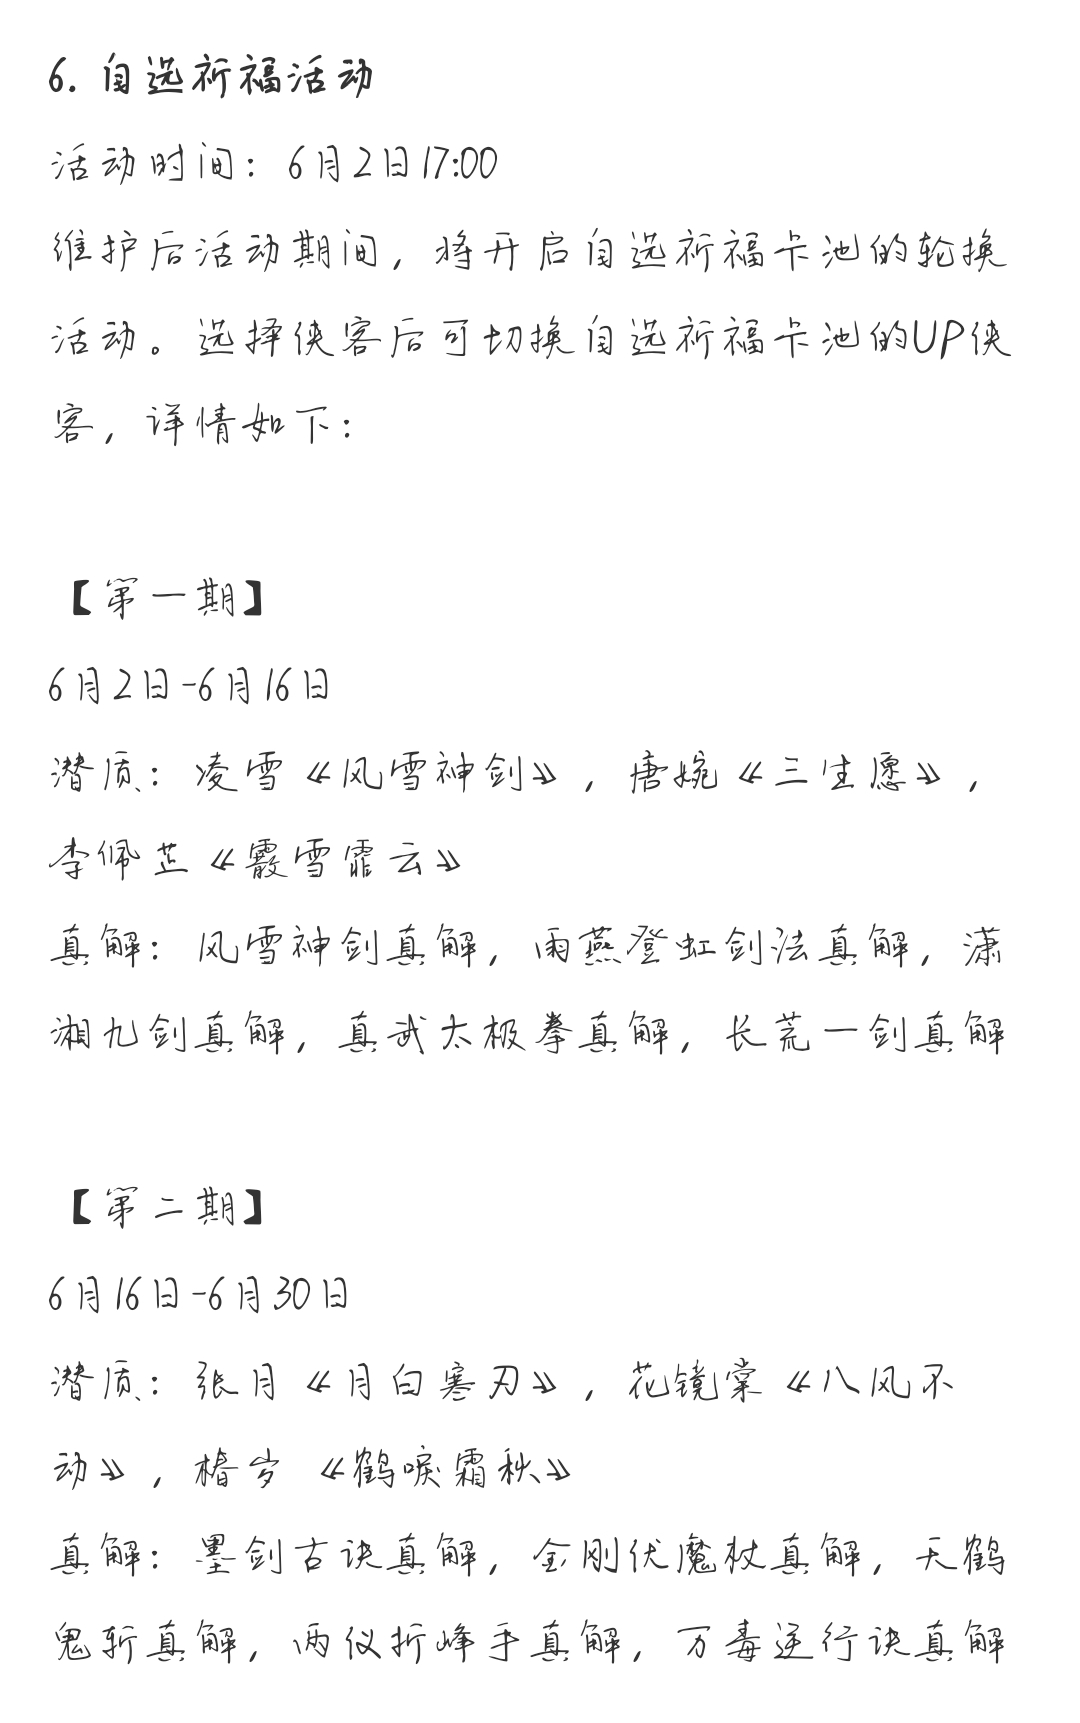 2.0周年庆祈福简介（6.2--6.30）|汉家江湖 - 第1张